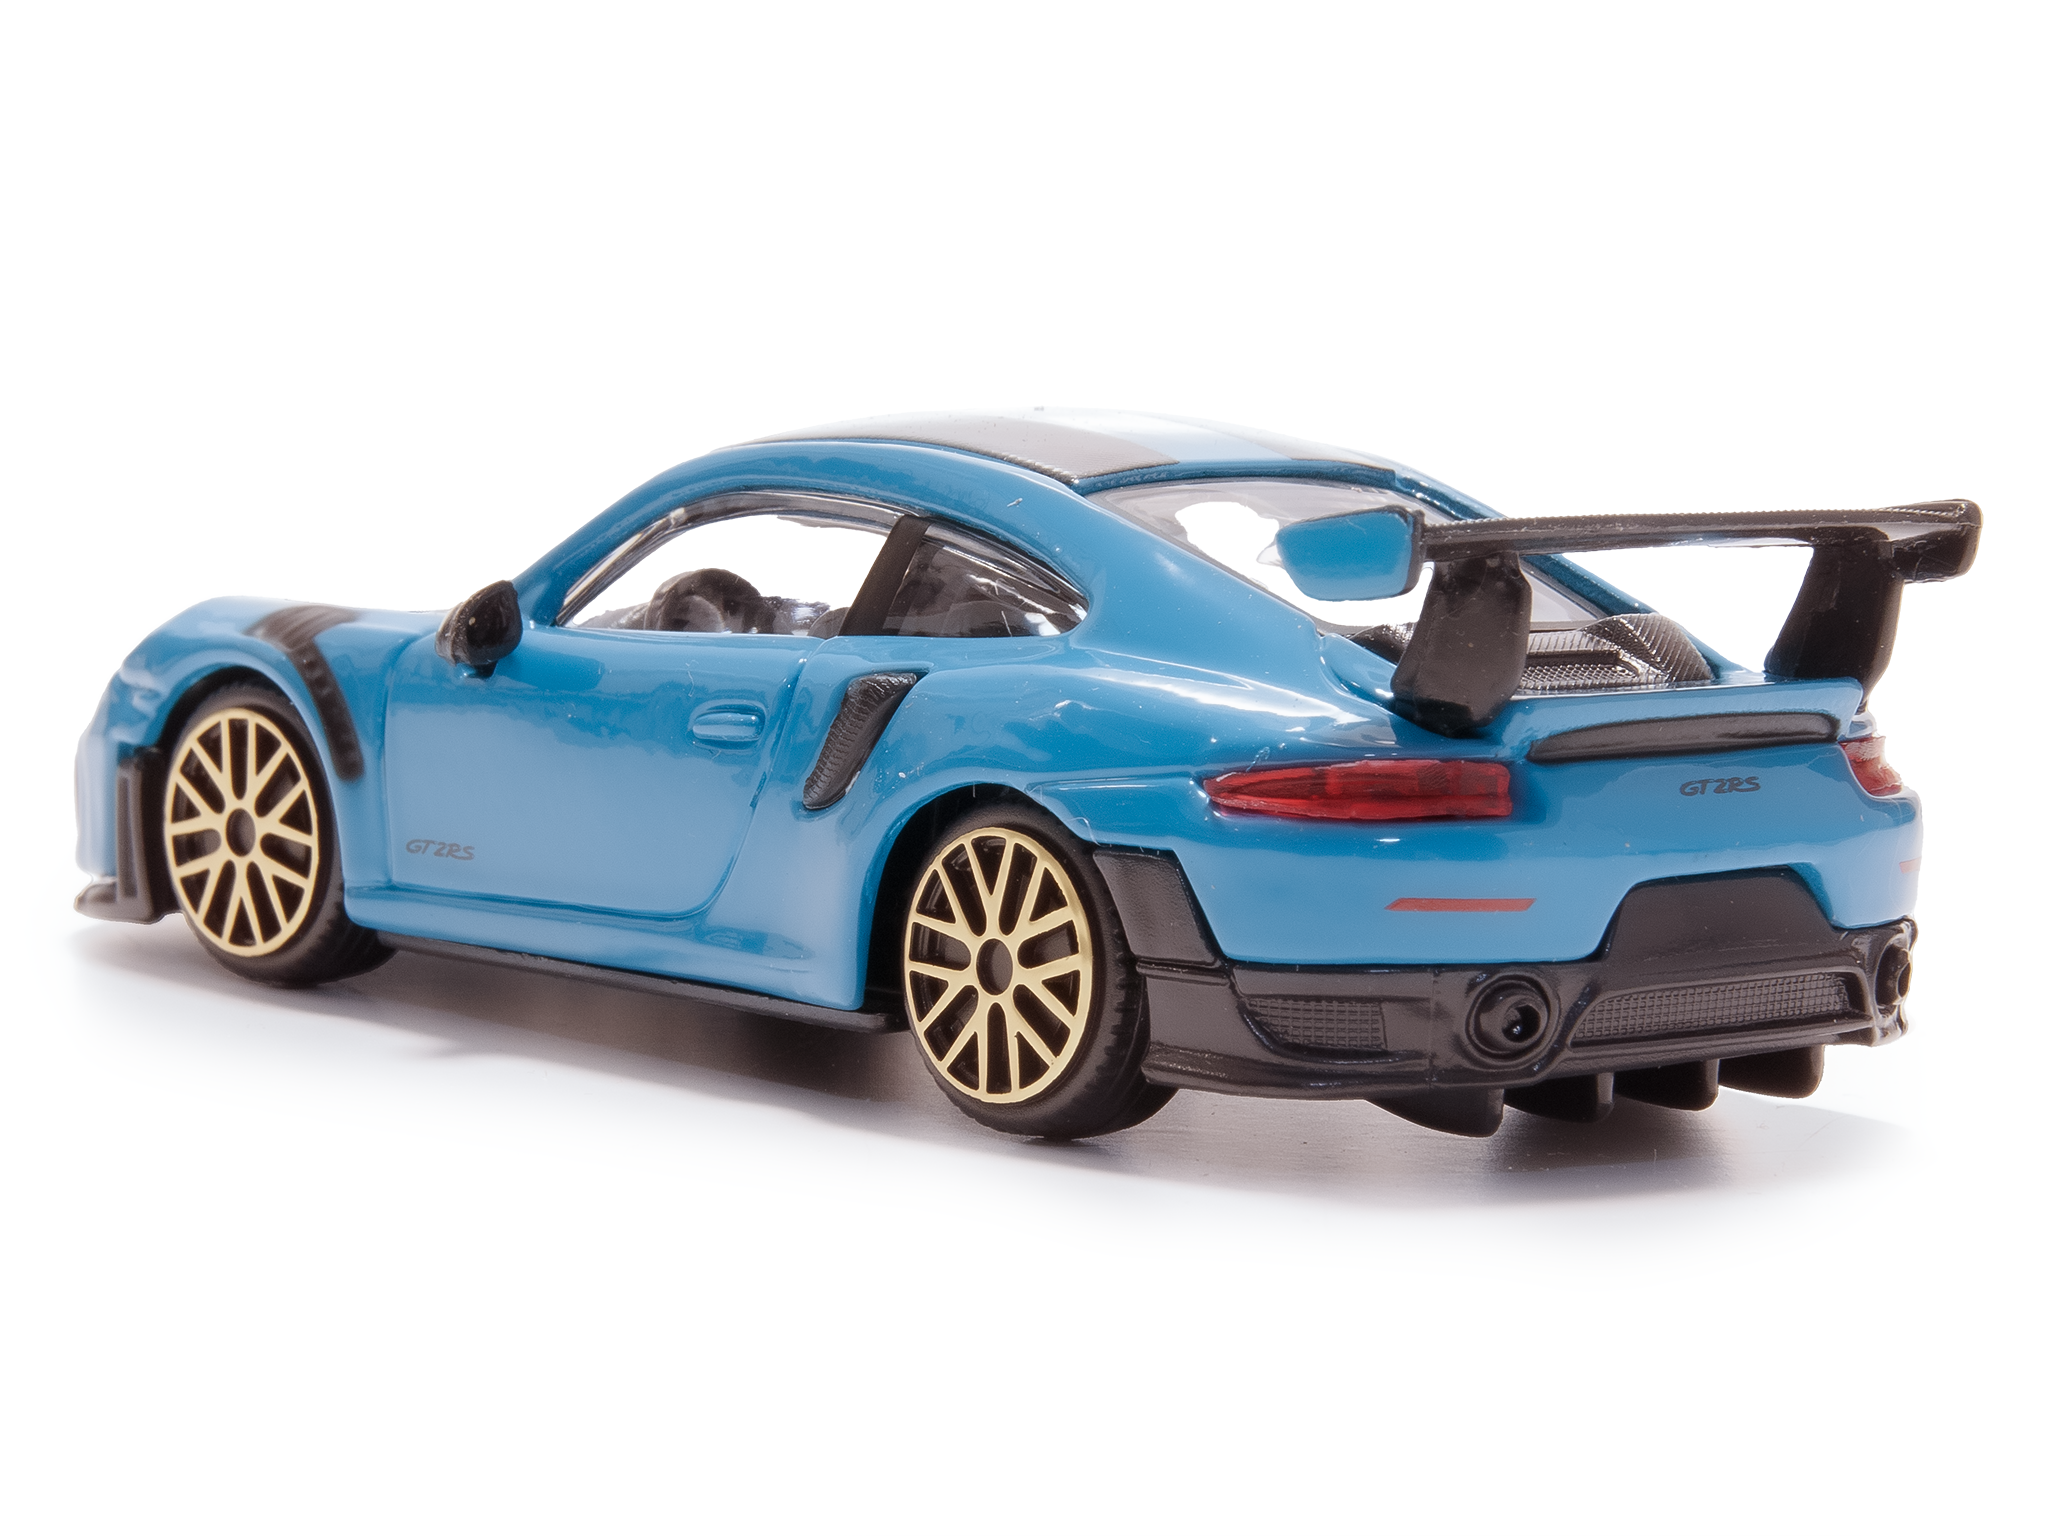 Porsche 911 GT2 RS blue - 1:43 Scale Diecast Toy Car